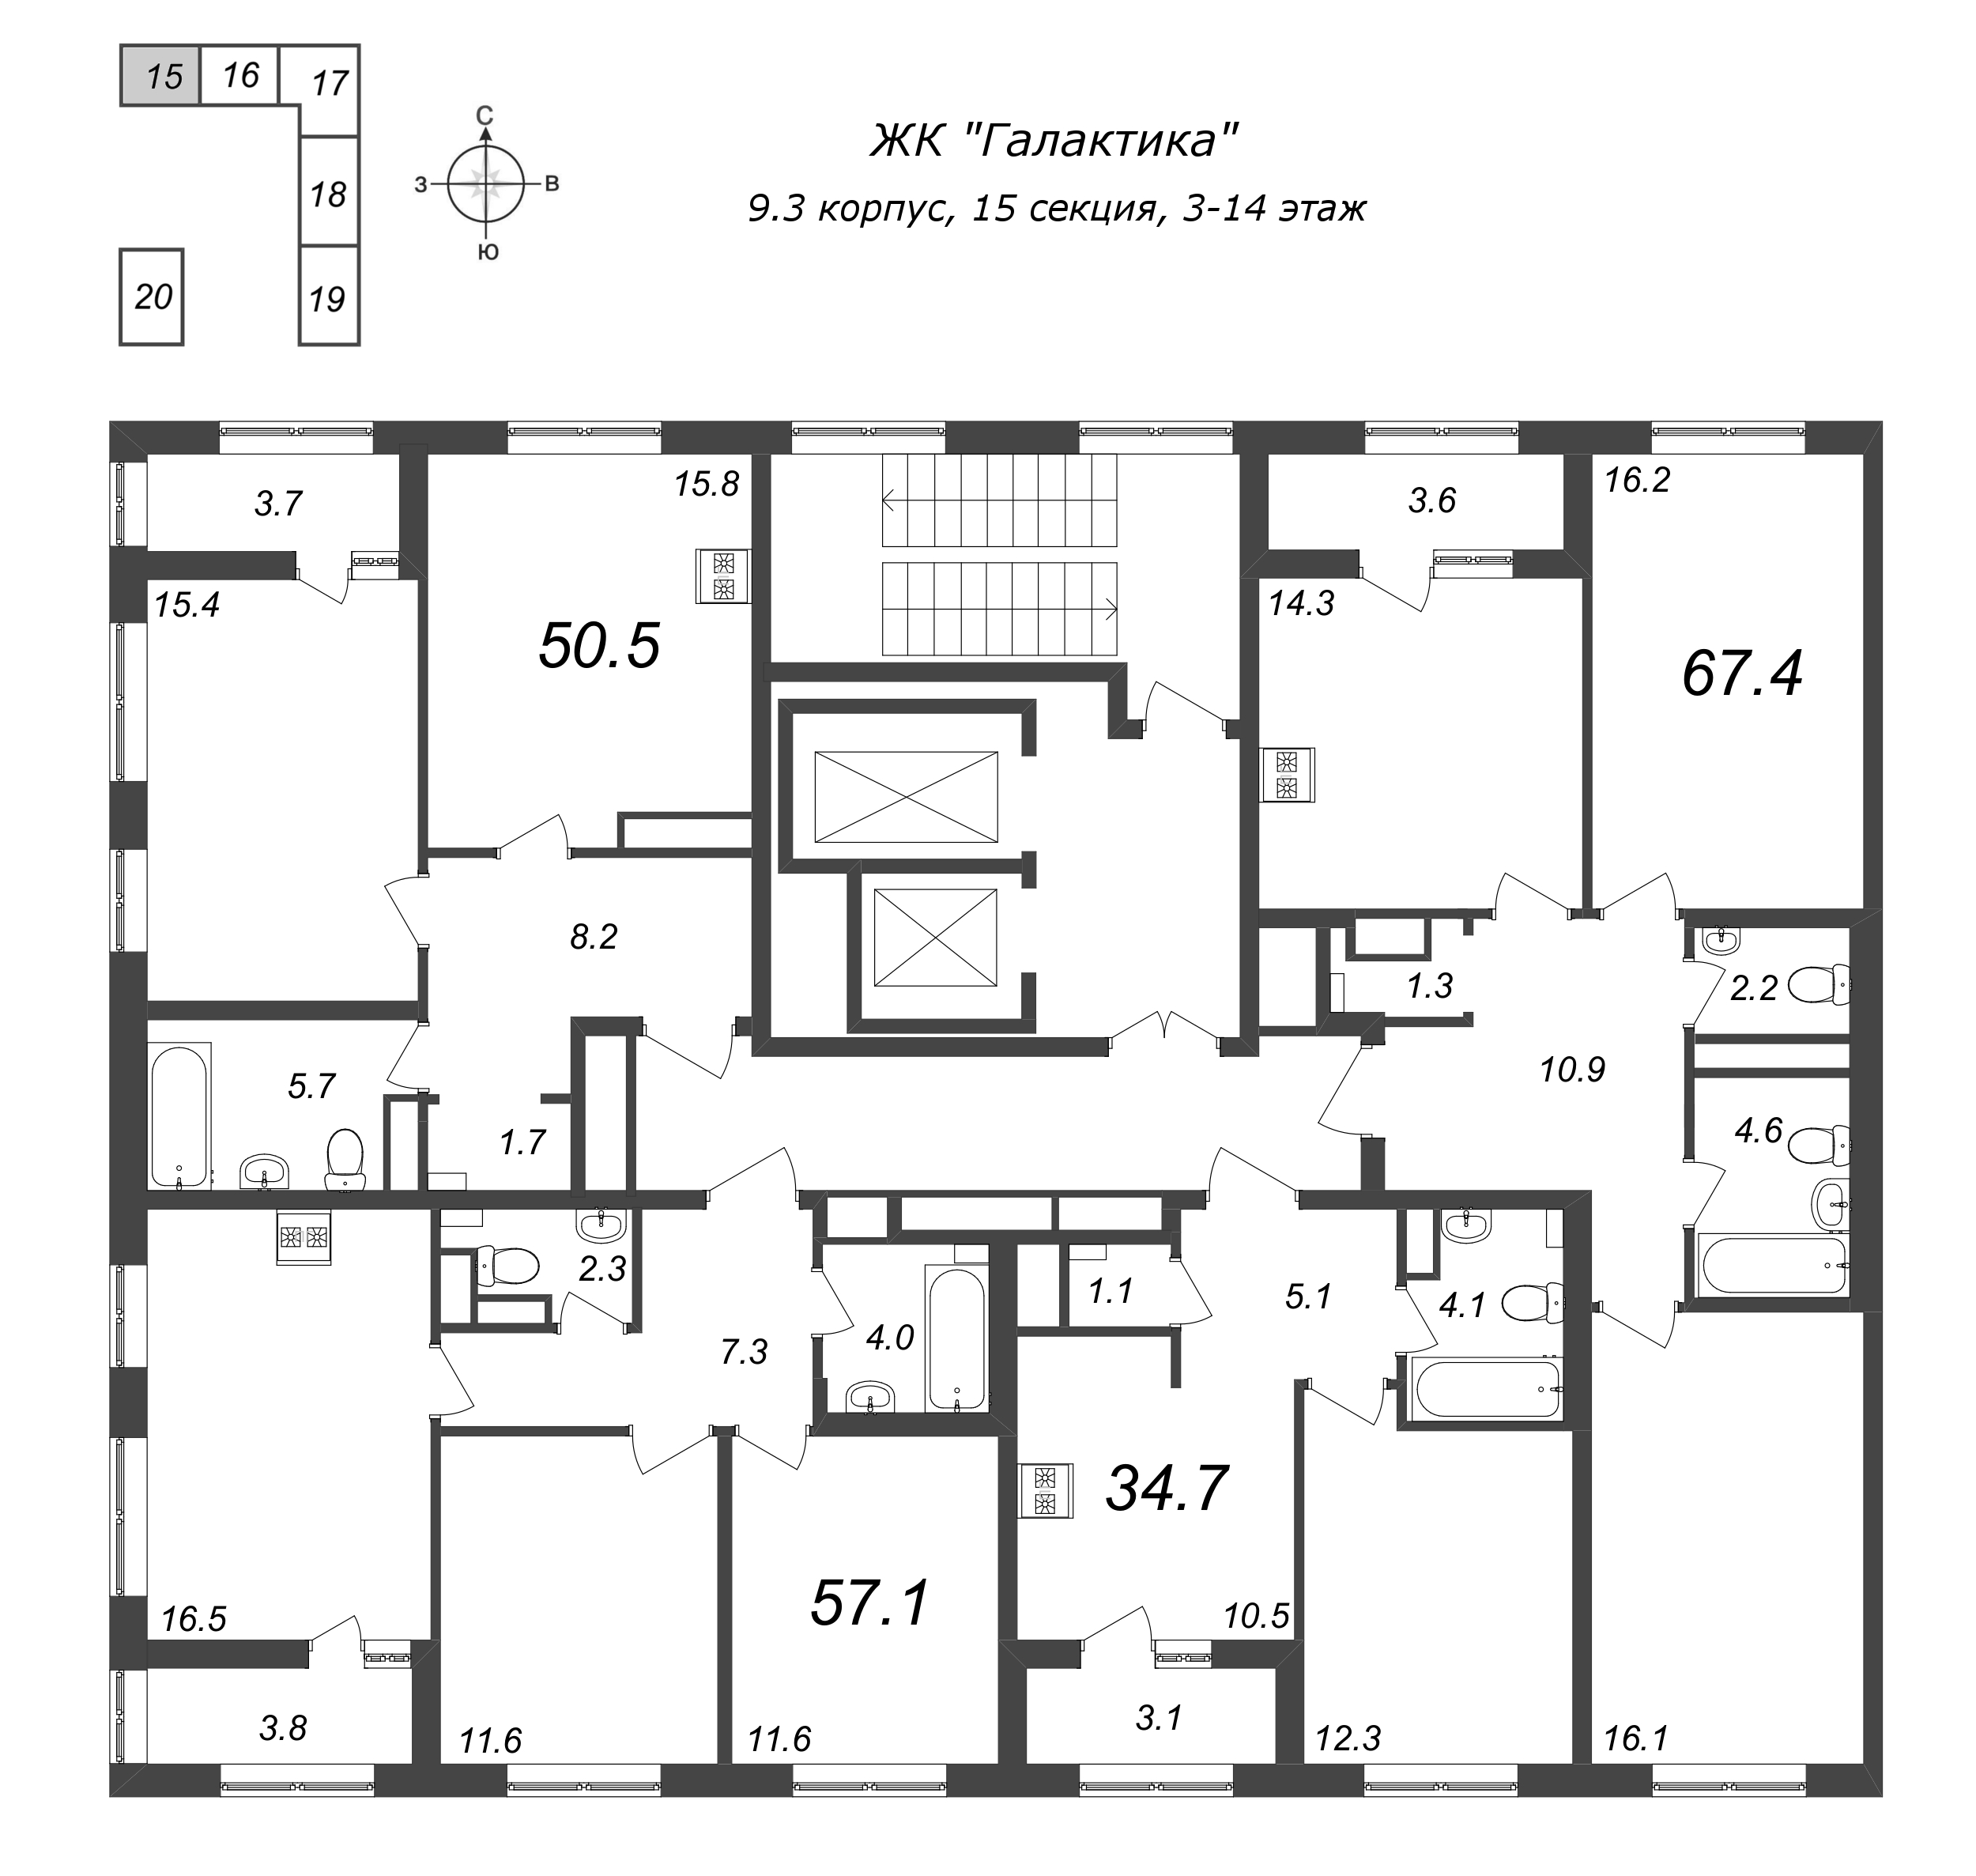 2-комнатная квартира, 67.6 м² в ЖК "Галактика" - планировка этажа